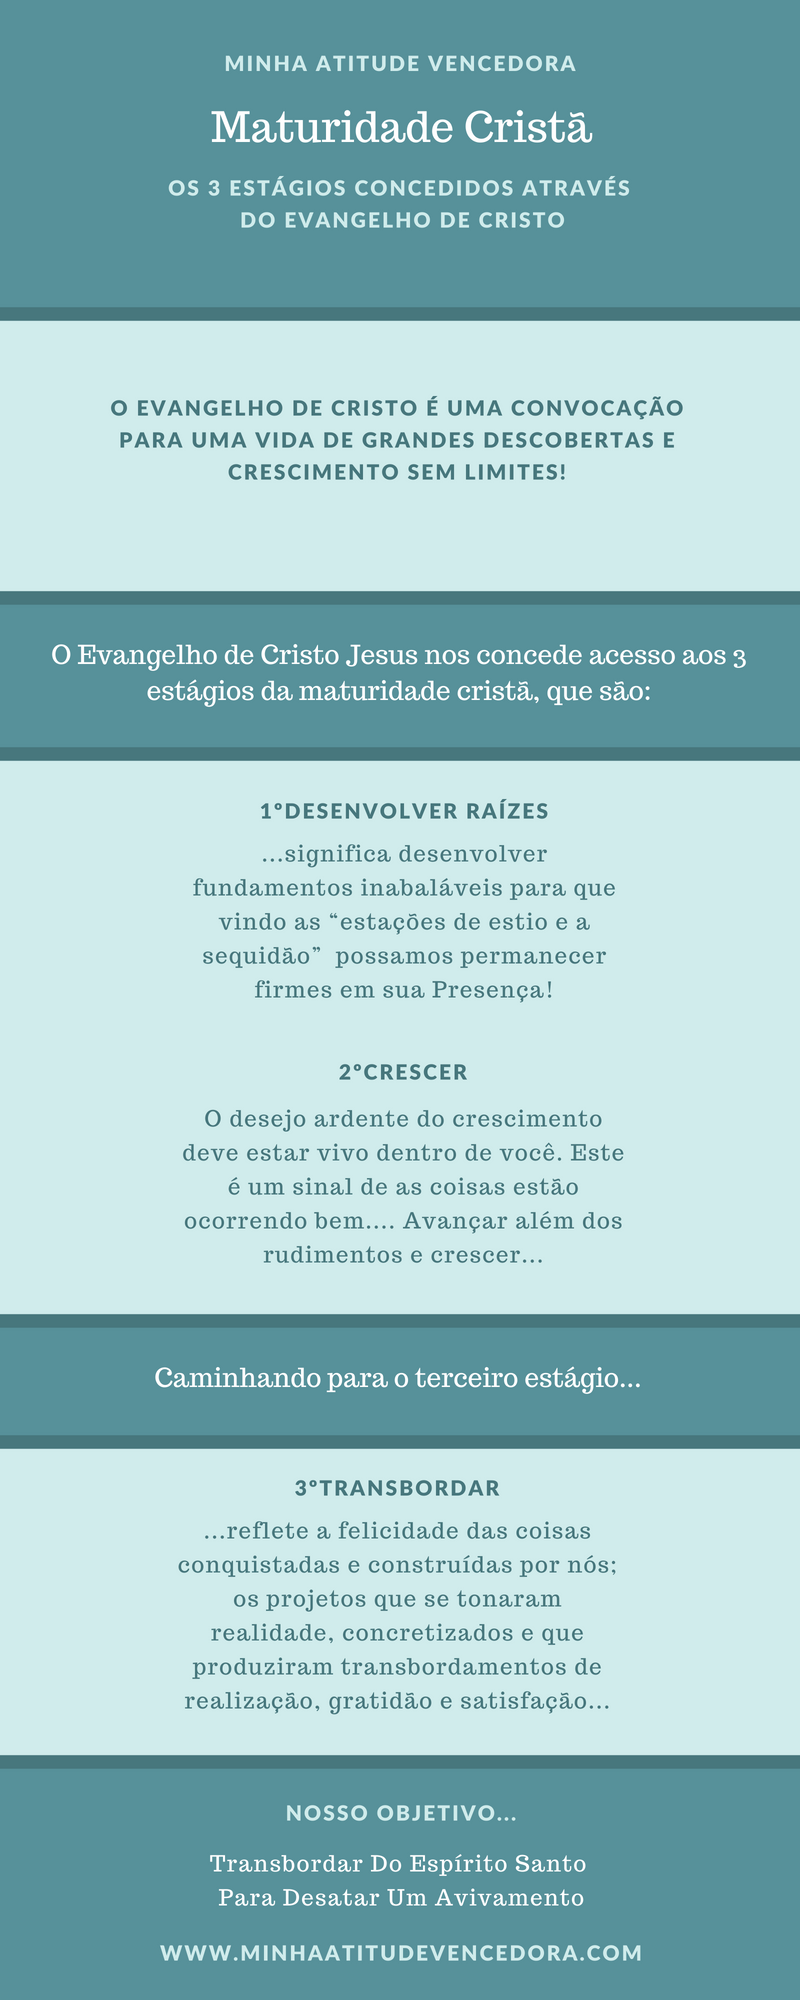 Os 3 Estágios Concedidos Através do Evangelho de Cristo Para Maturidade Cristã - Maturidade Cristã: Os 3 Estágios Concedidos Através do Evangelho de Cristo